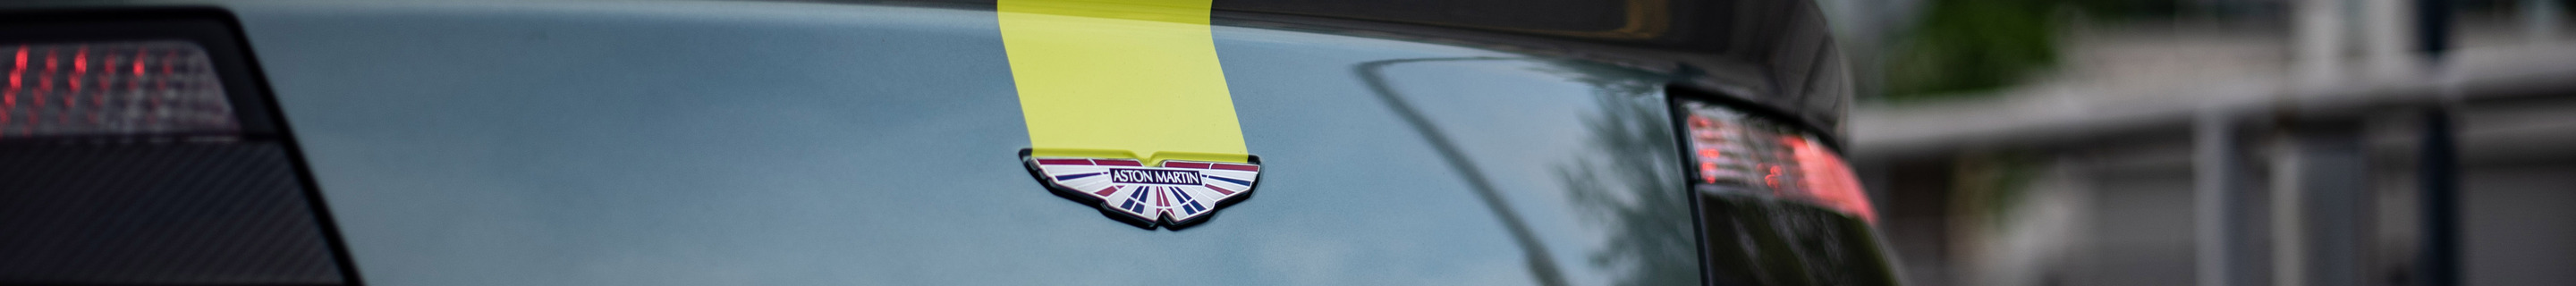 Aston Martin V8 Vantage AMR Roadster